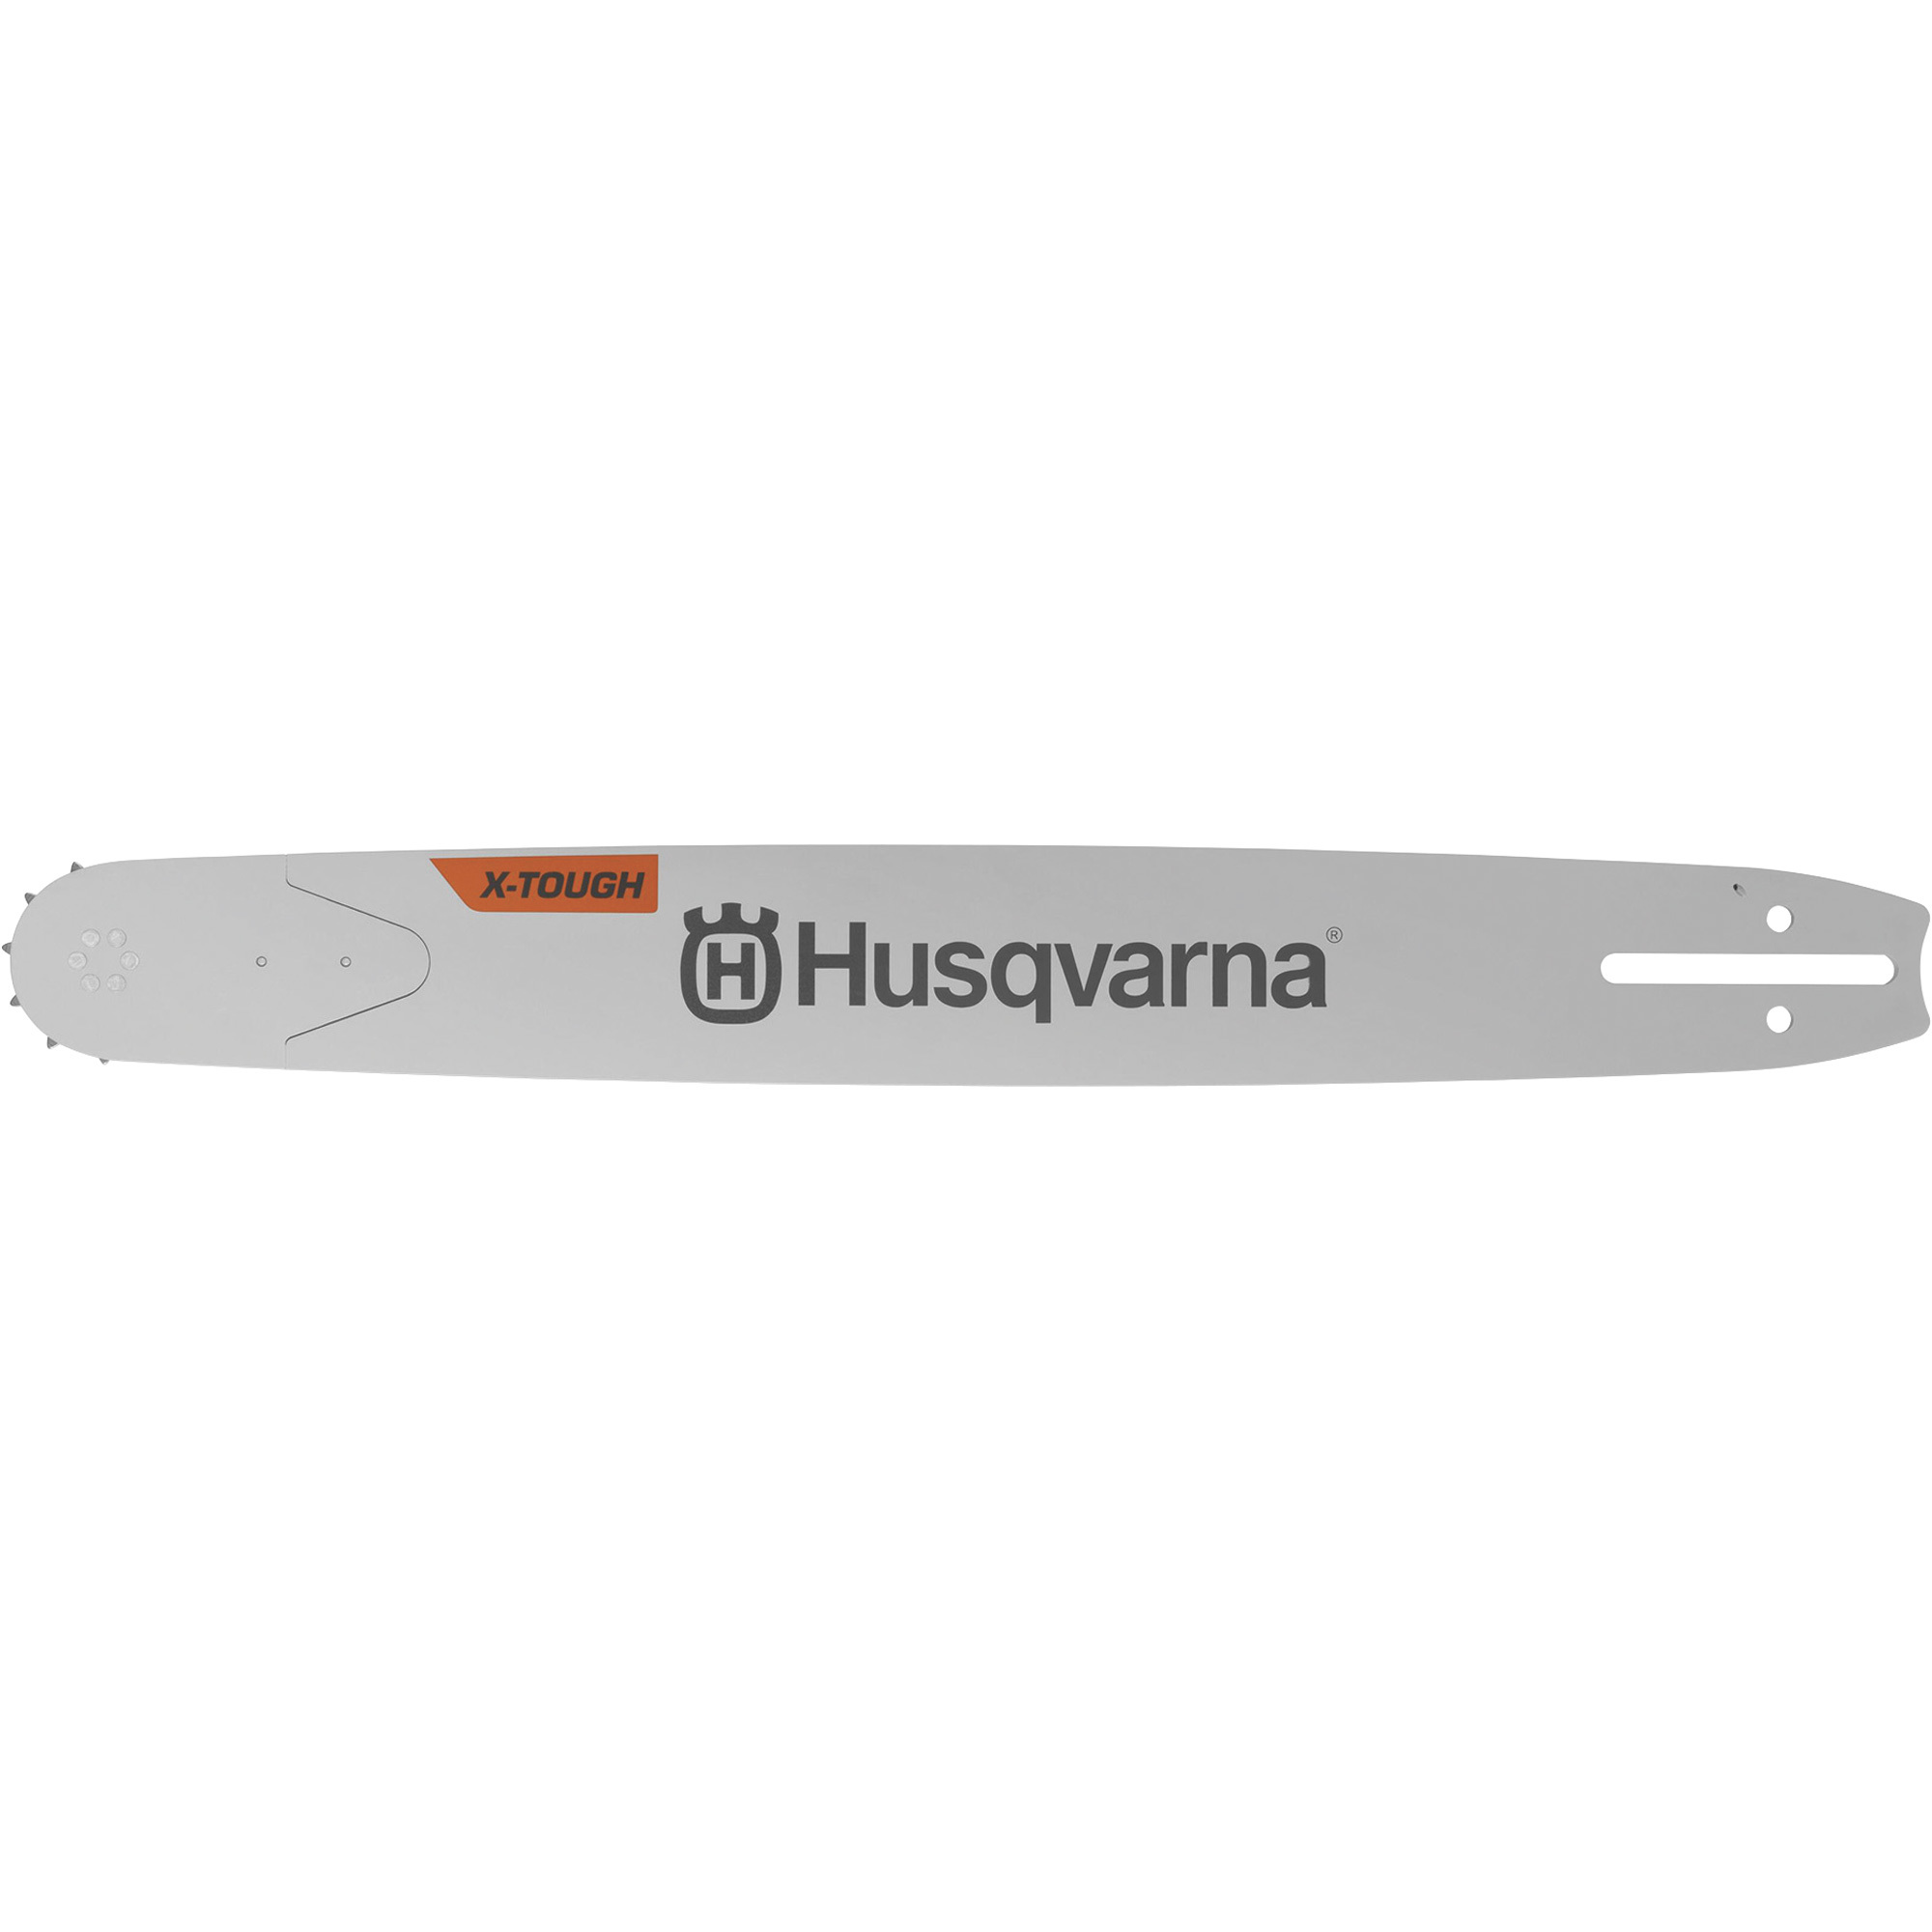 Husqvarna X-Tough RSN Chainsaw Guide Bar, 24Inch Bar Length, Model XTR380-84